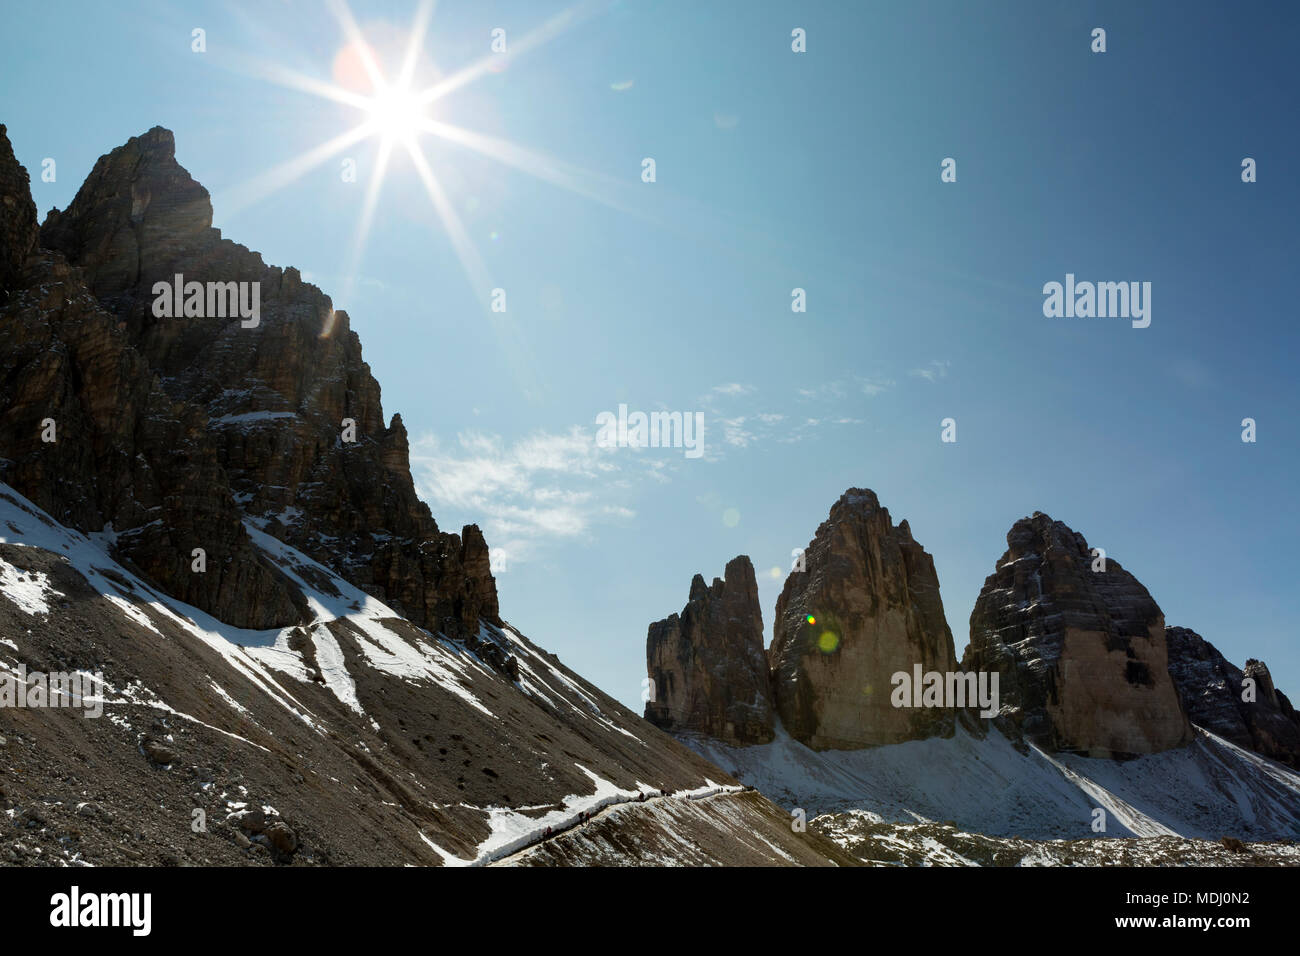 Les clochers de montagnes escarpées avec la solarisation et ciel bleu ; Sesto, Bolzano, Italie Banque D'Images